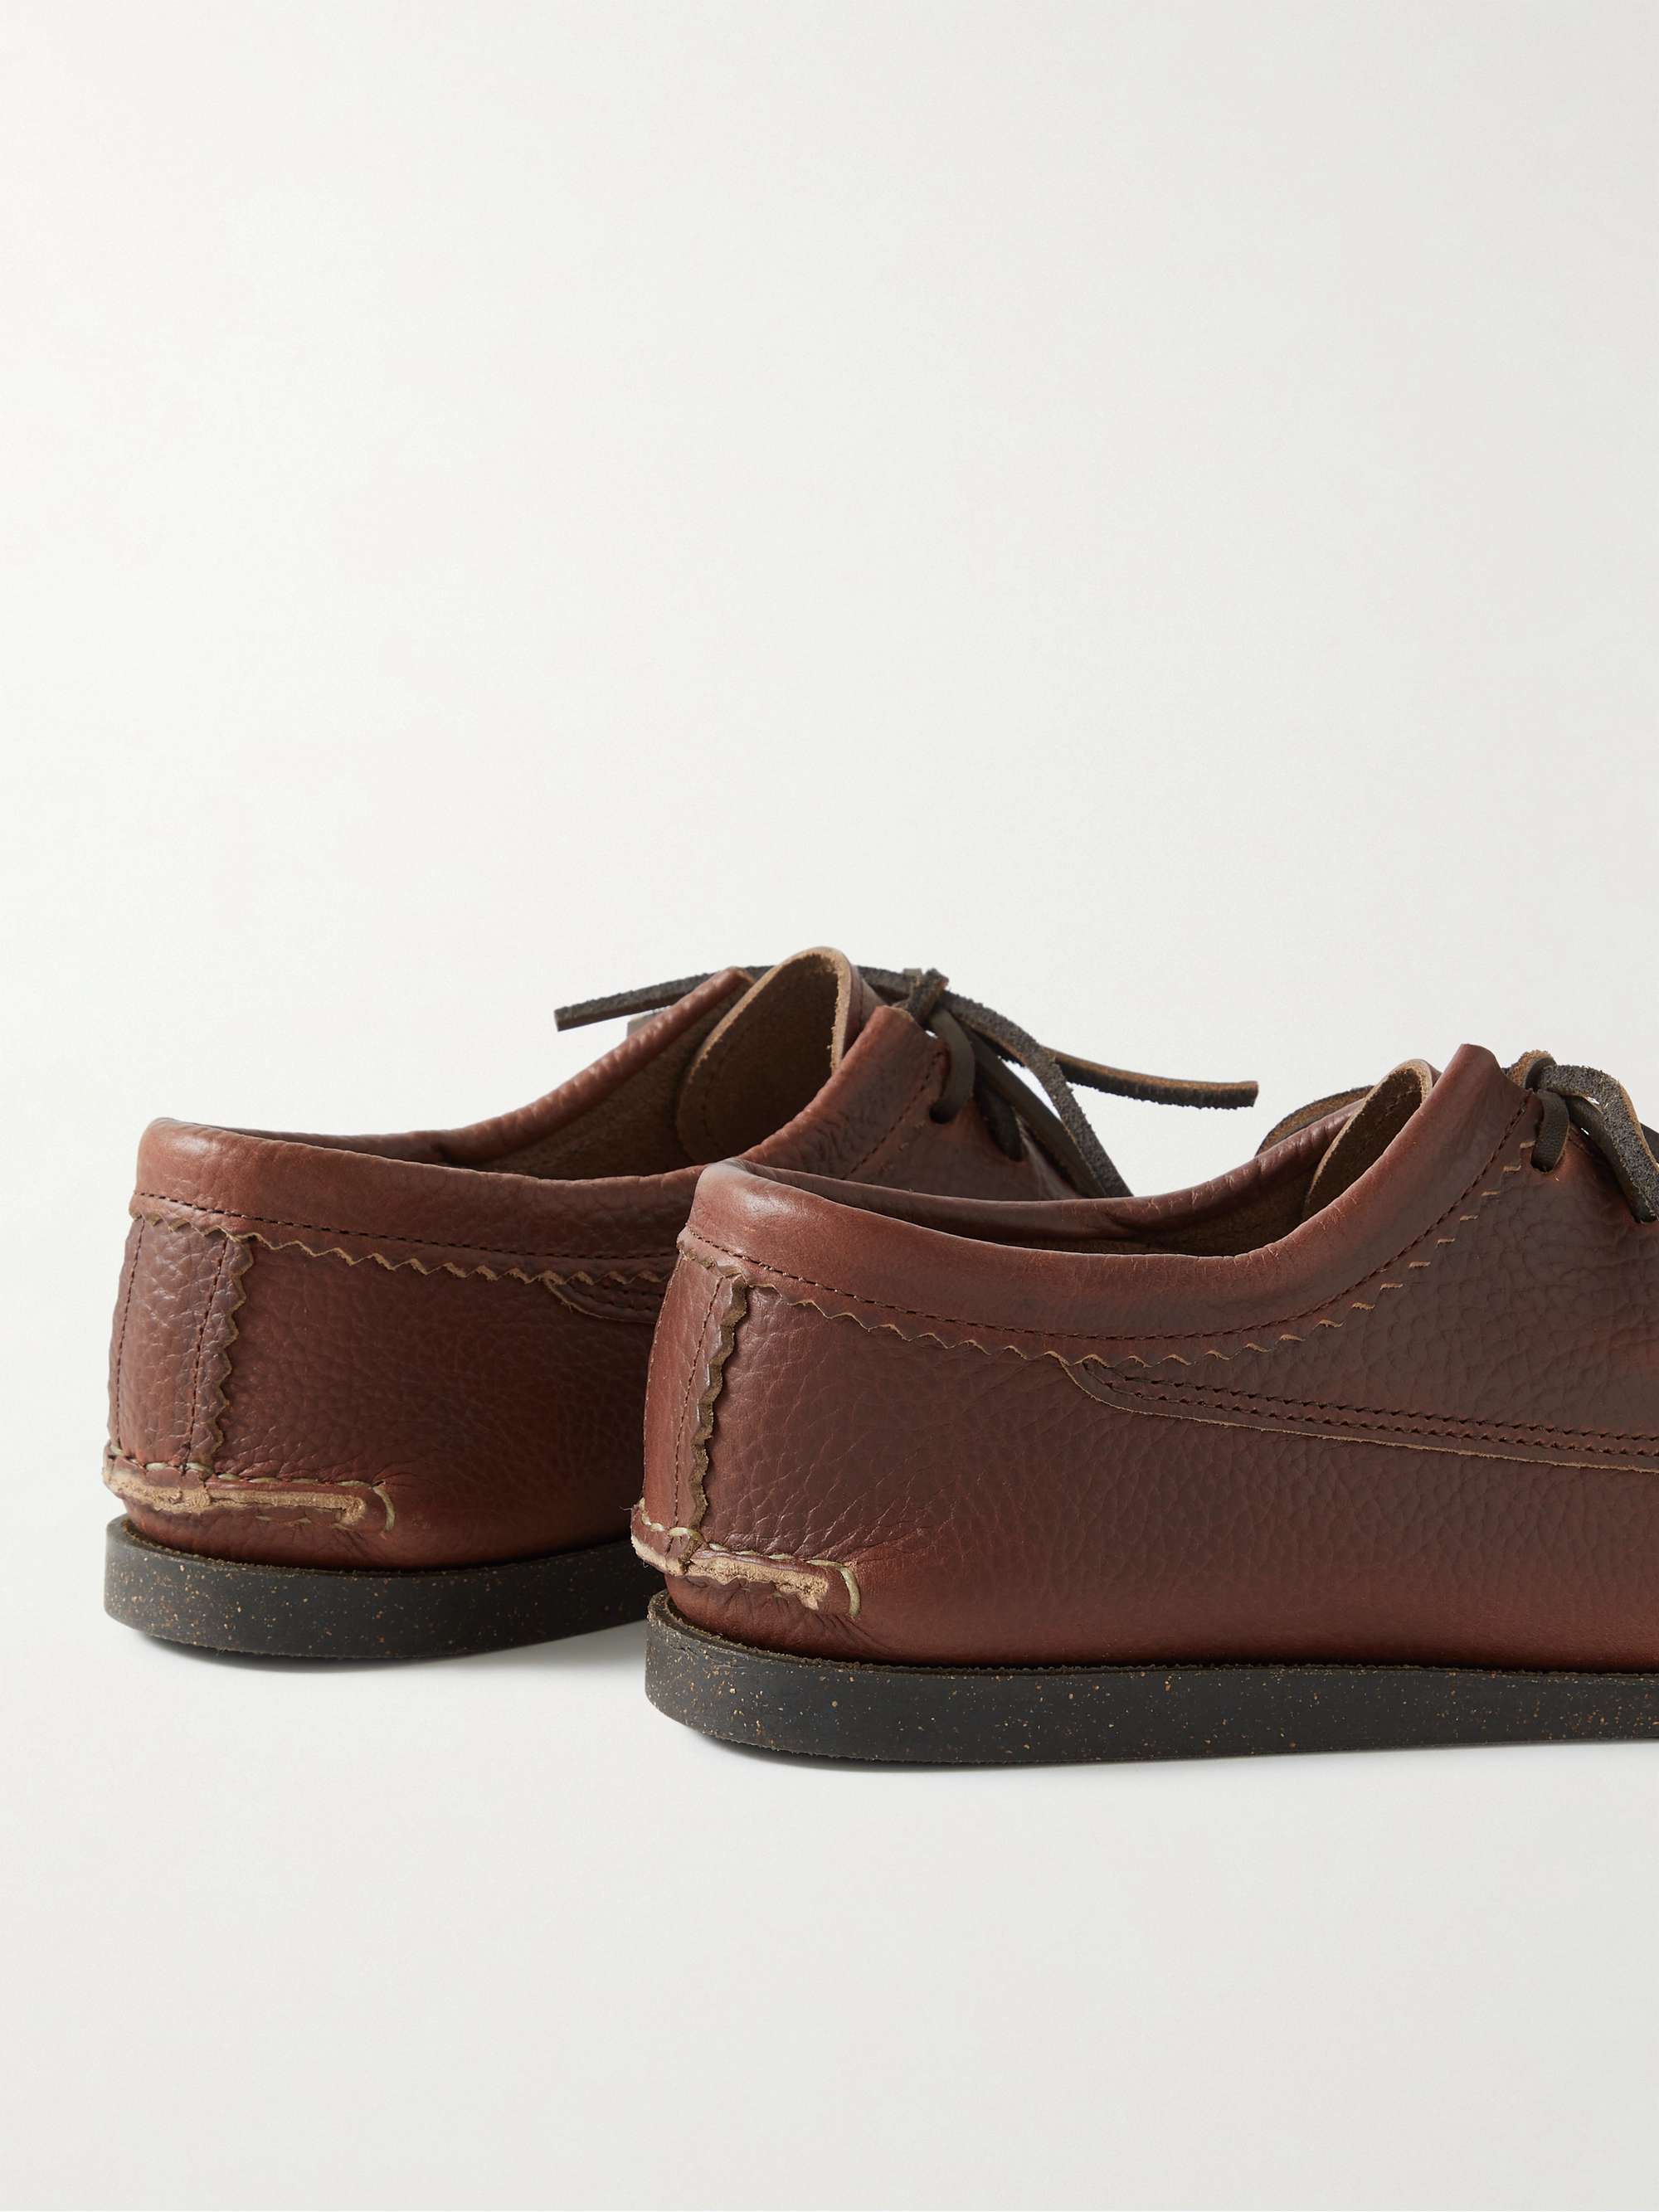 YUKETEN Textured-Leather Kiltie Derby Shoes